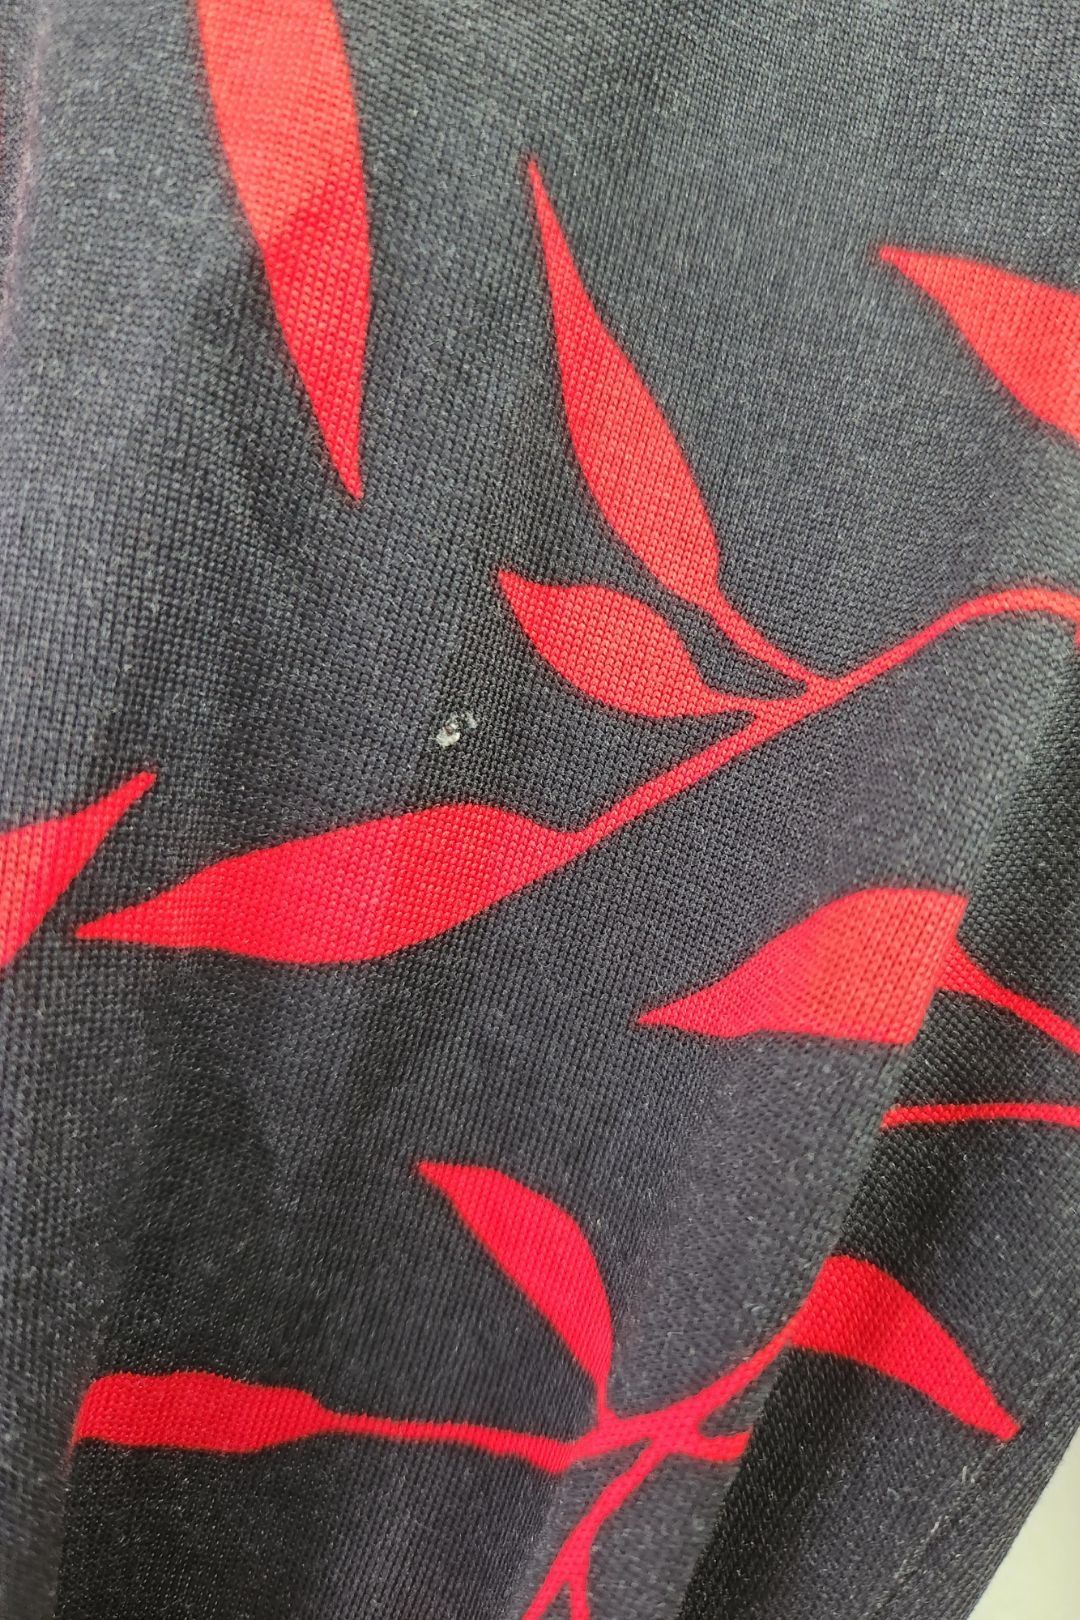 Diane Von Furstenberg - Black Leaves Print Silk Dress